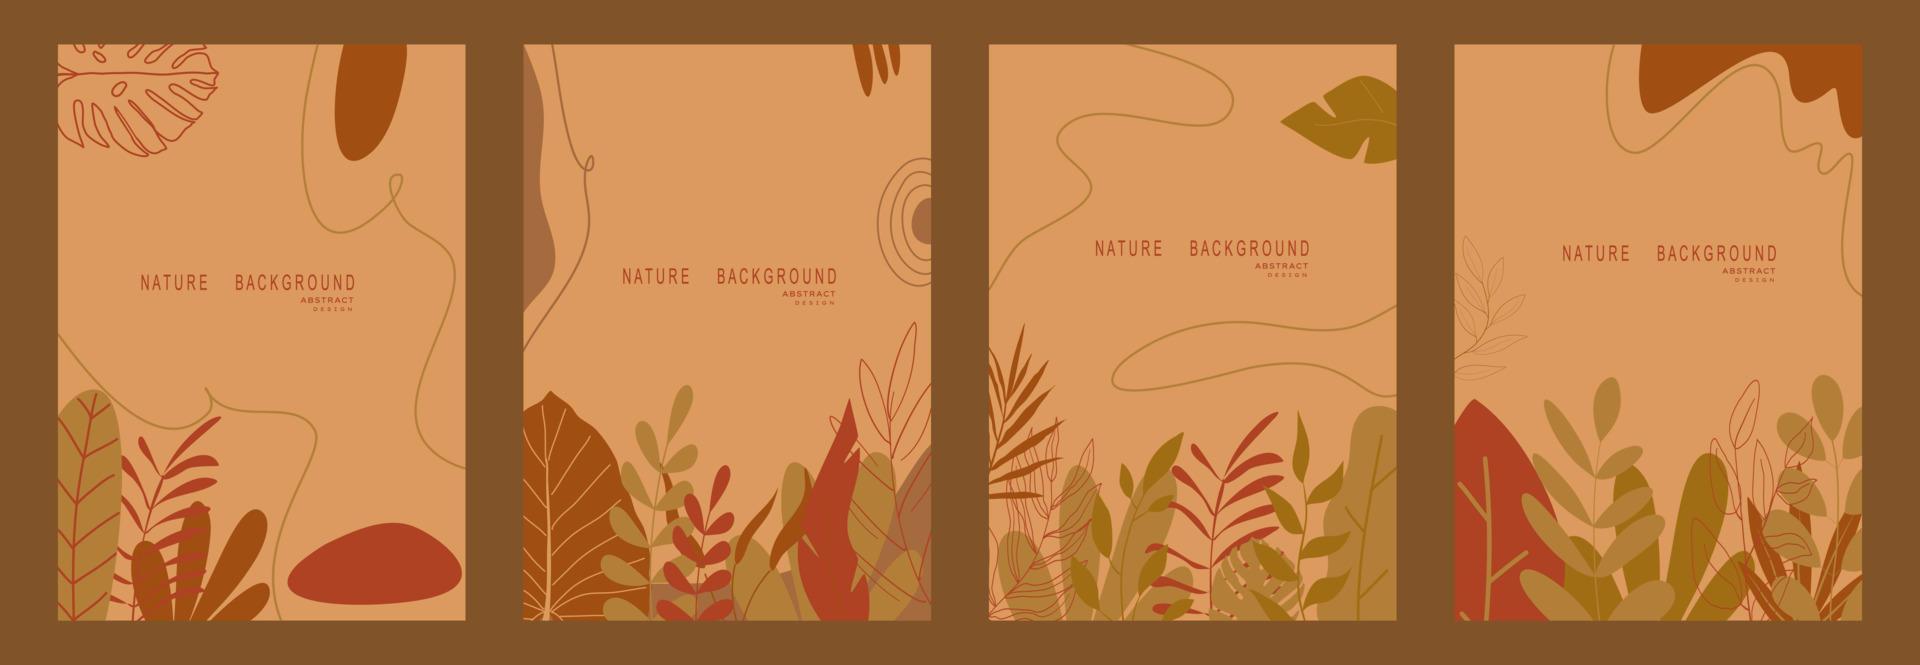 abstrakter naturhintergrund mit blättern und pflanzen. Platz für Text kopieren. Vektor-Illustration vektor